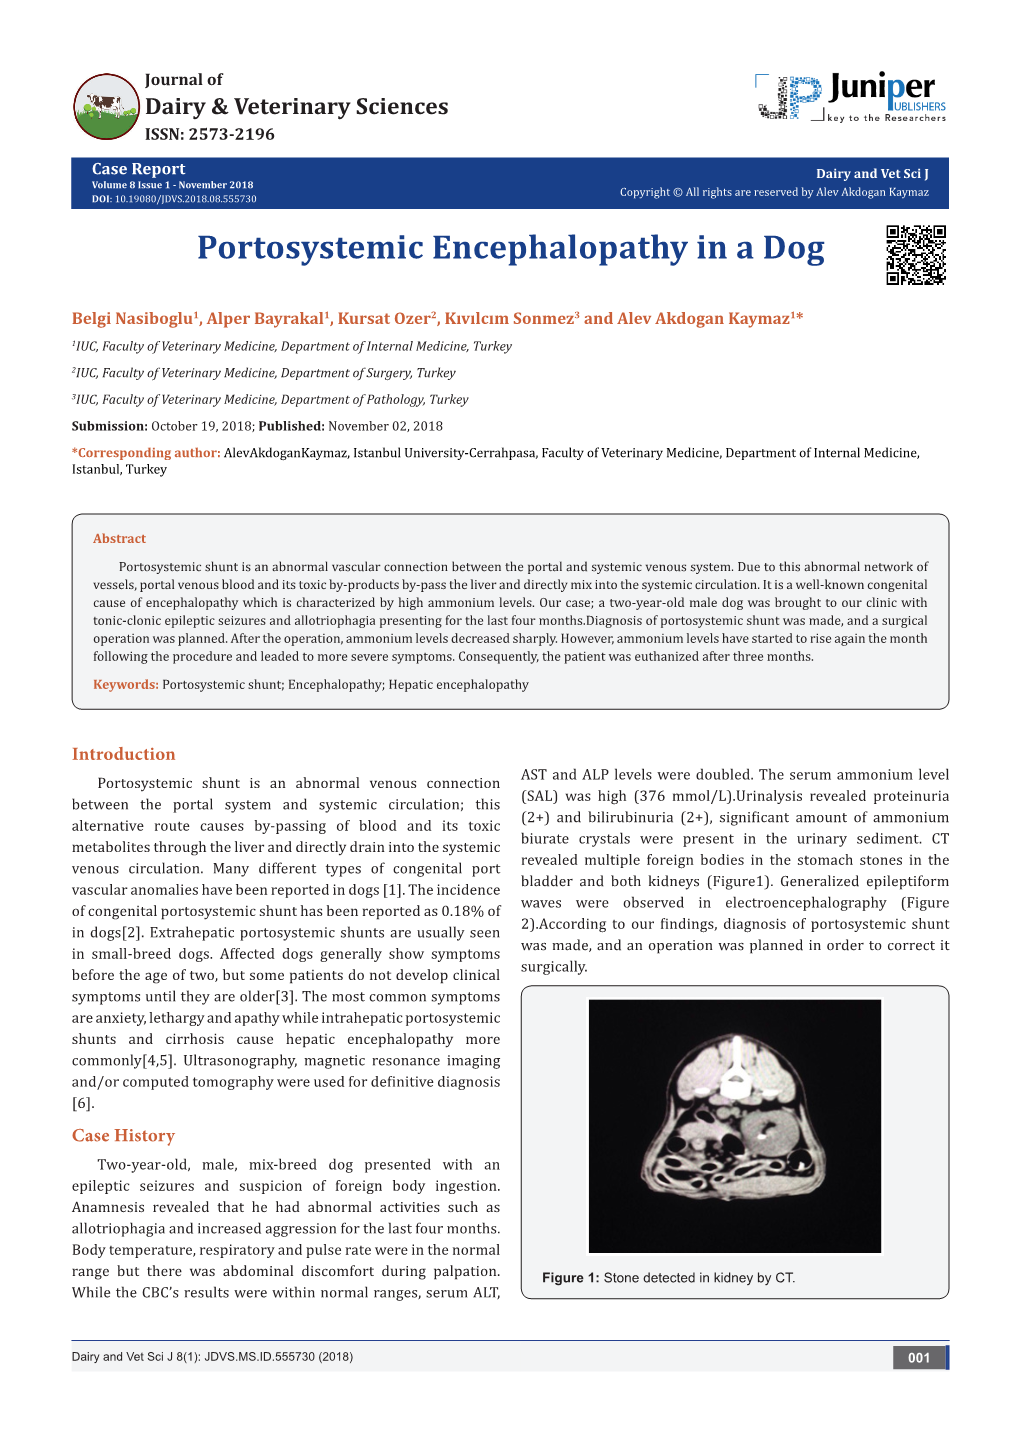 Portosystemic Encephalopathy in a Dog